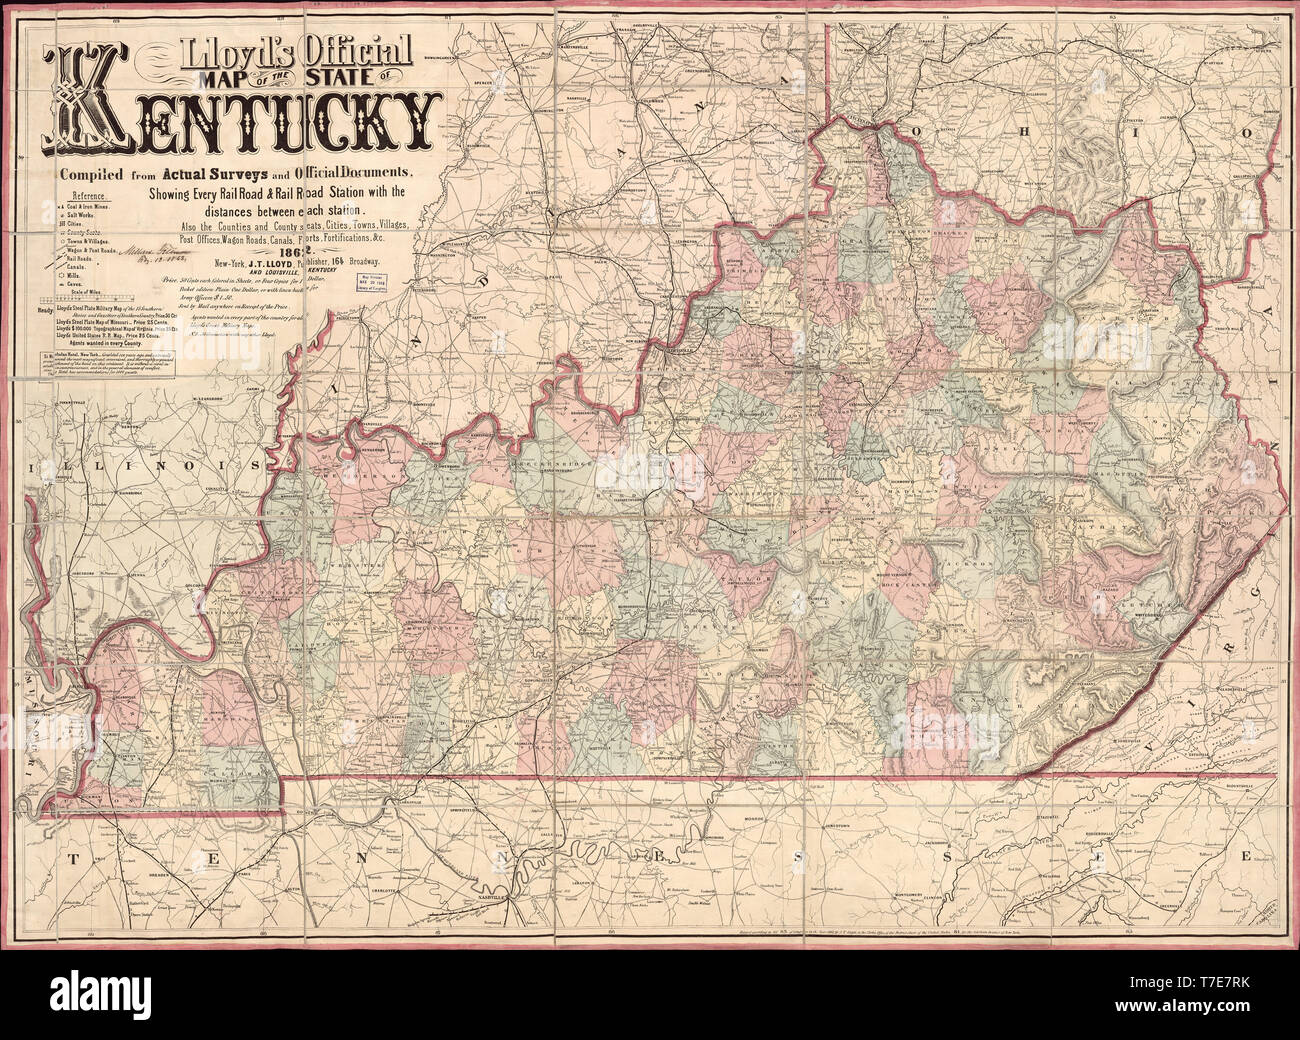 Lloyd's offizielle Karte des Staates Kentucky, von James T. Lloyd, New York, 1862 veröffentlicht. Stockfoto